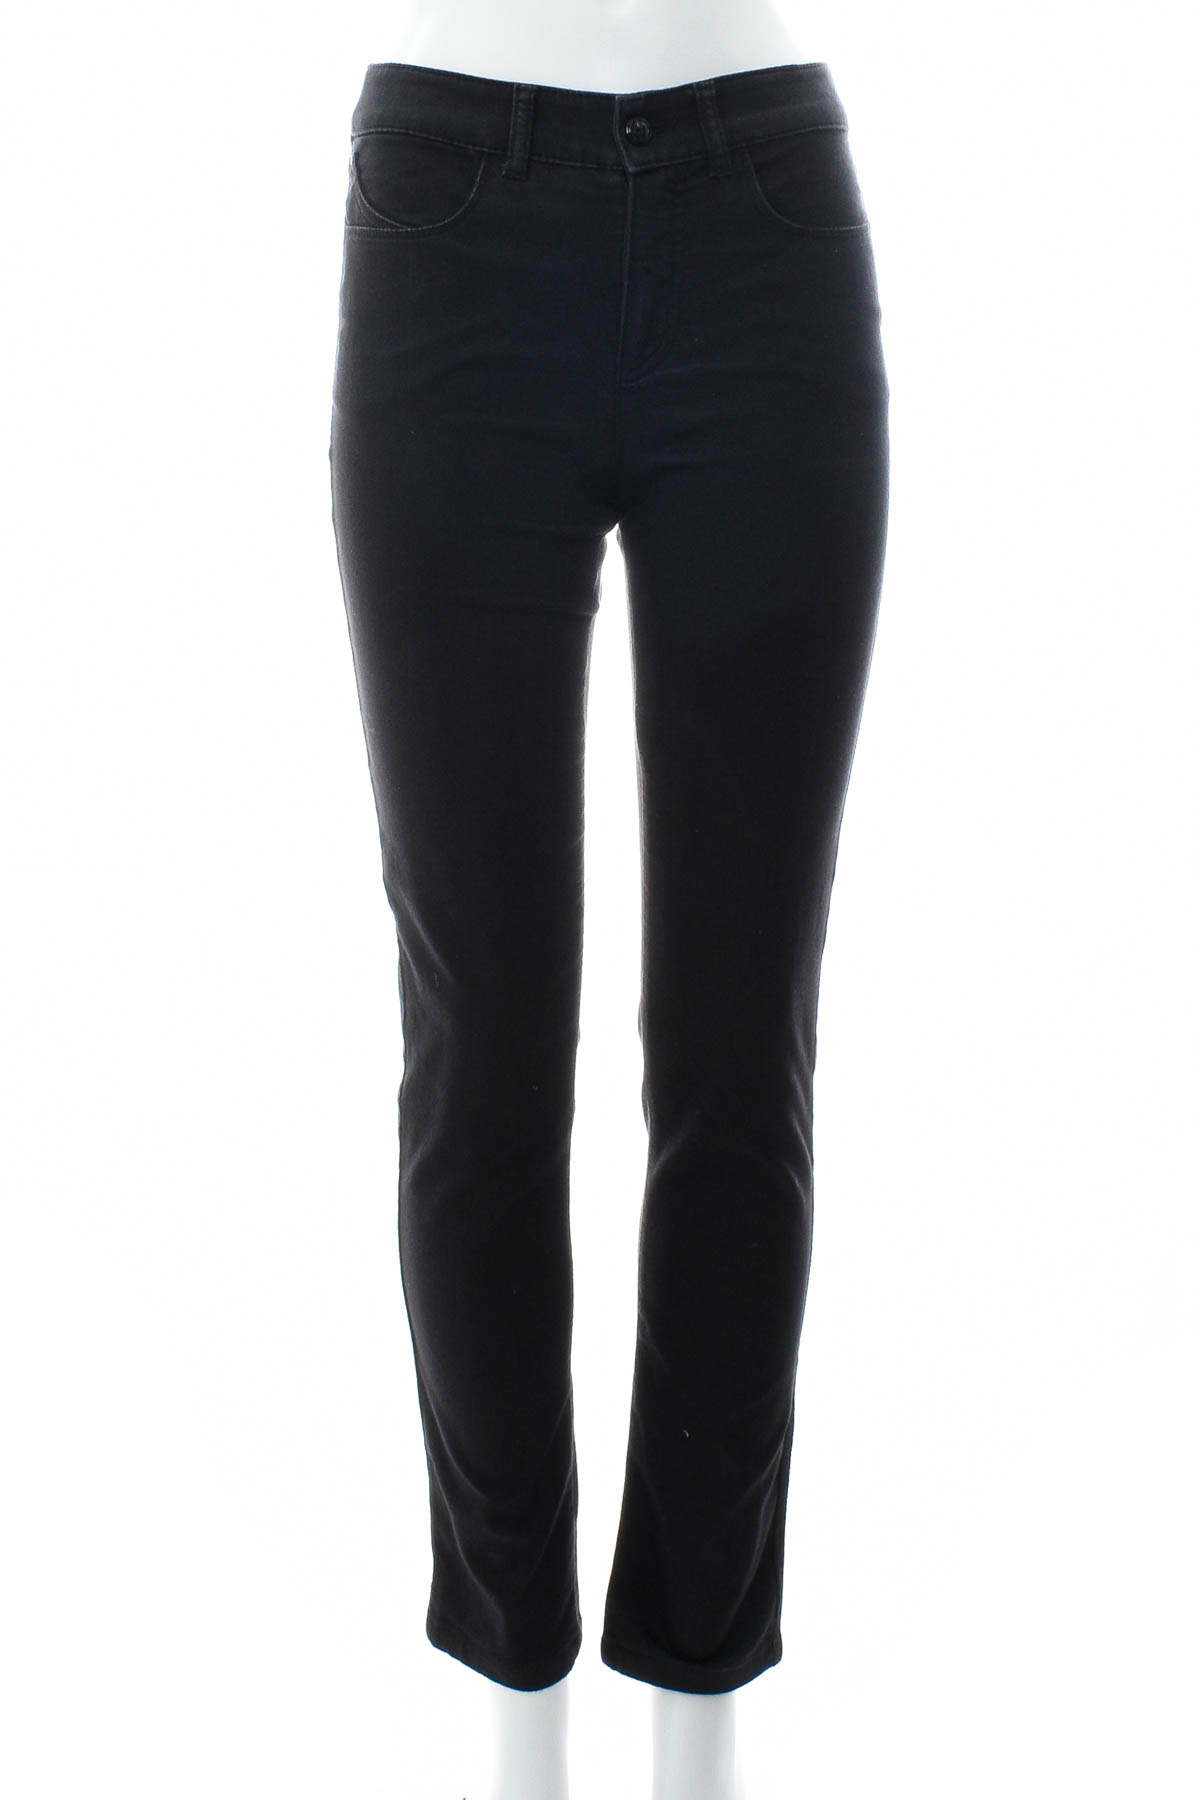 Γυναικεία παντελόνια - Armani Jeans - 0